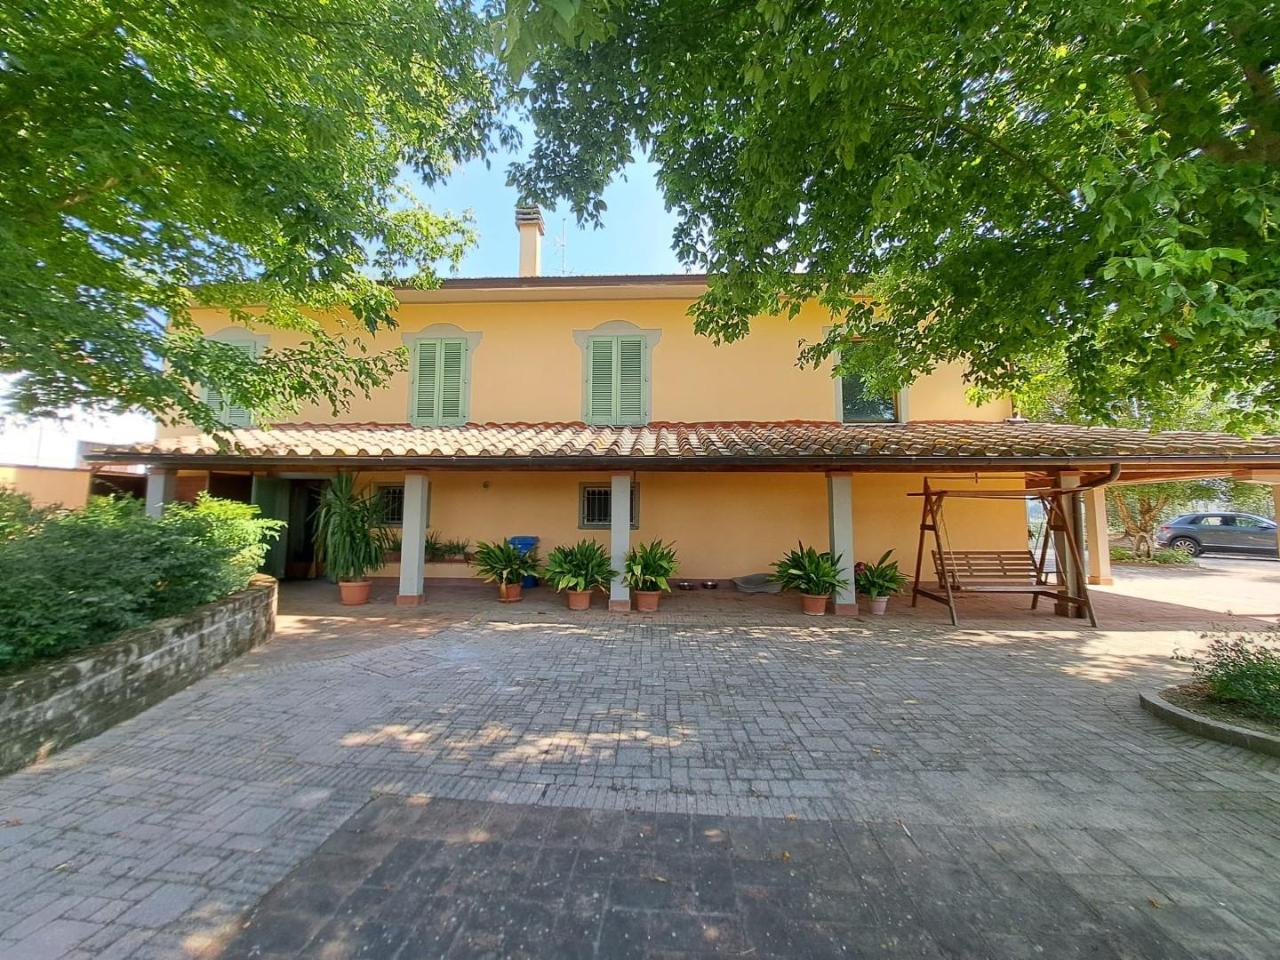 Villa in vendita a Cerreto Guidi